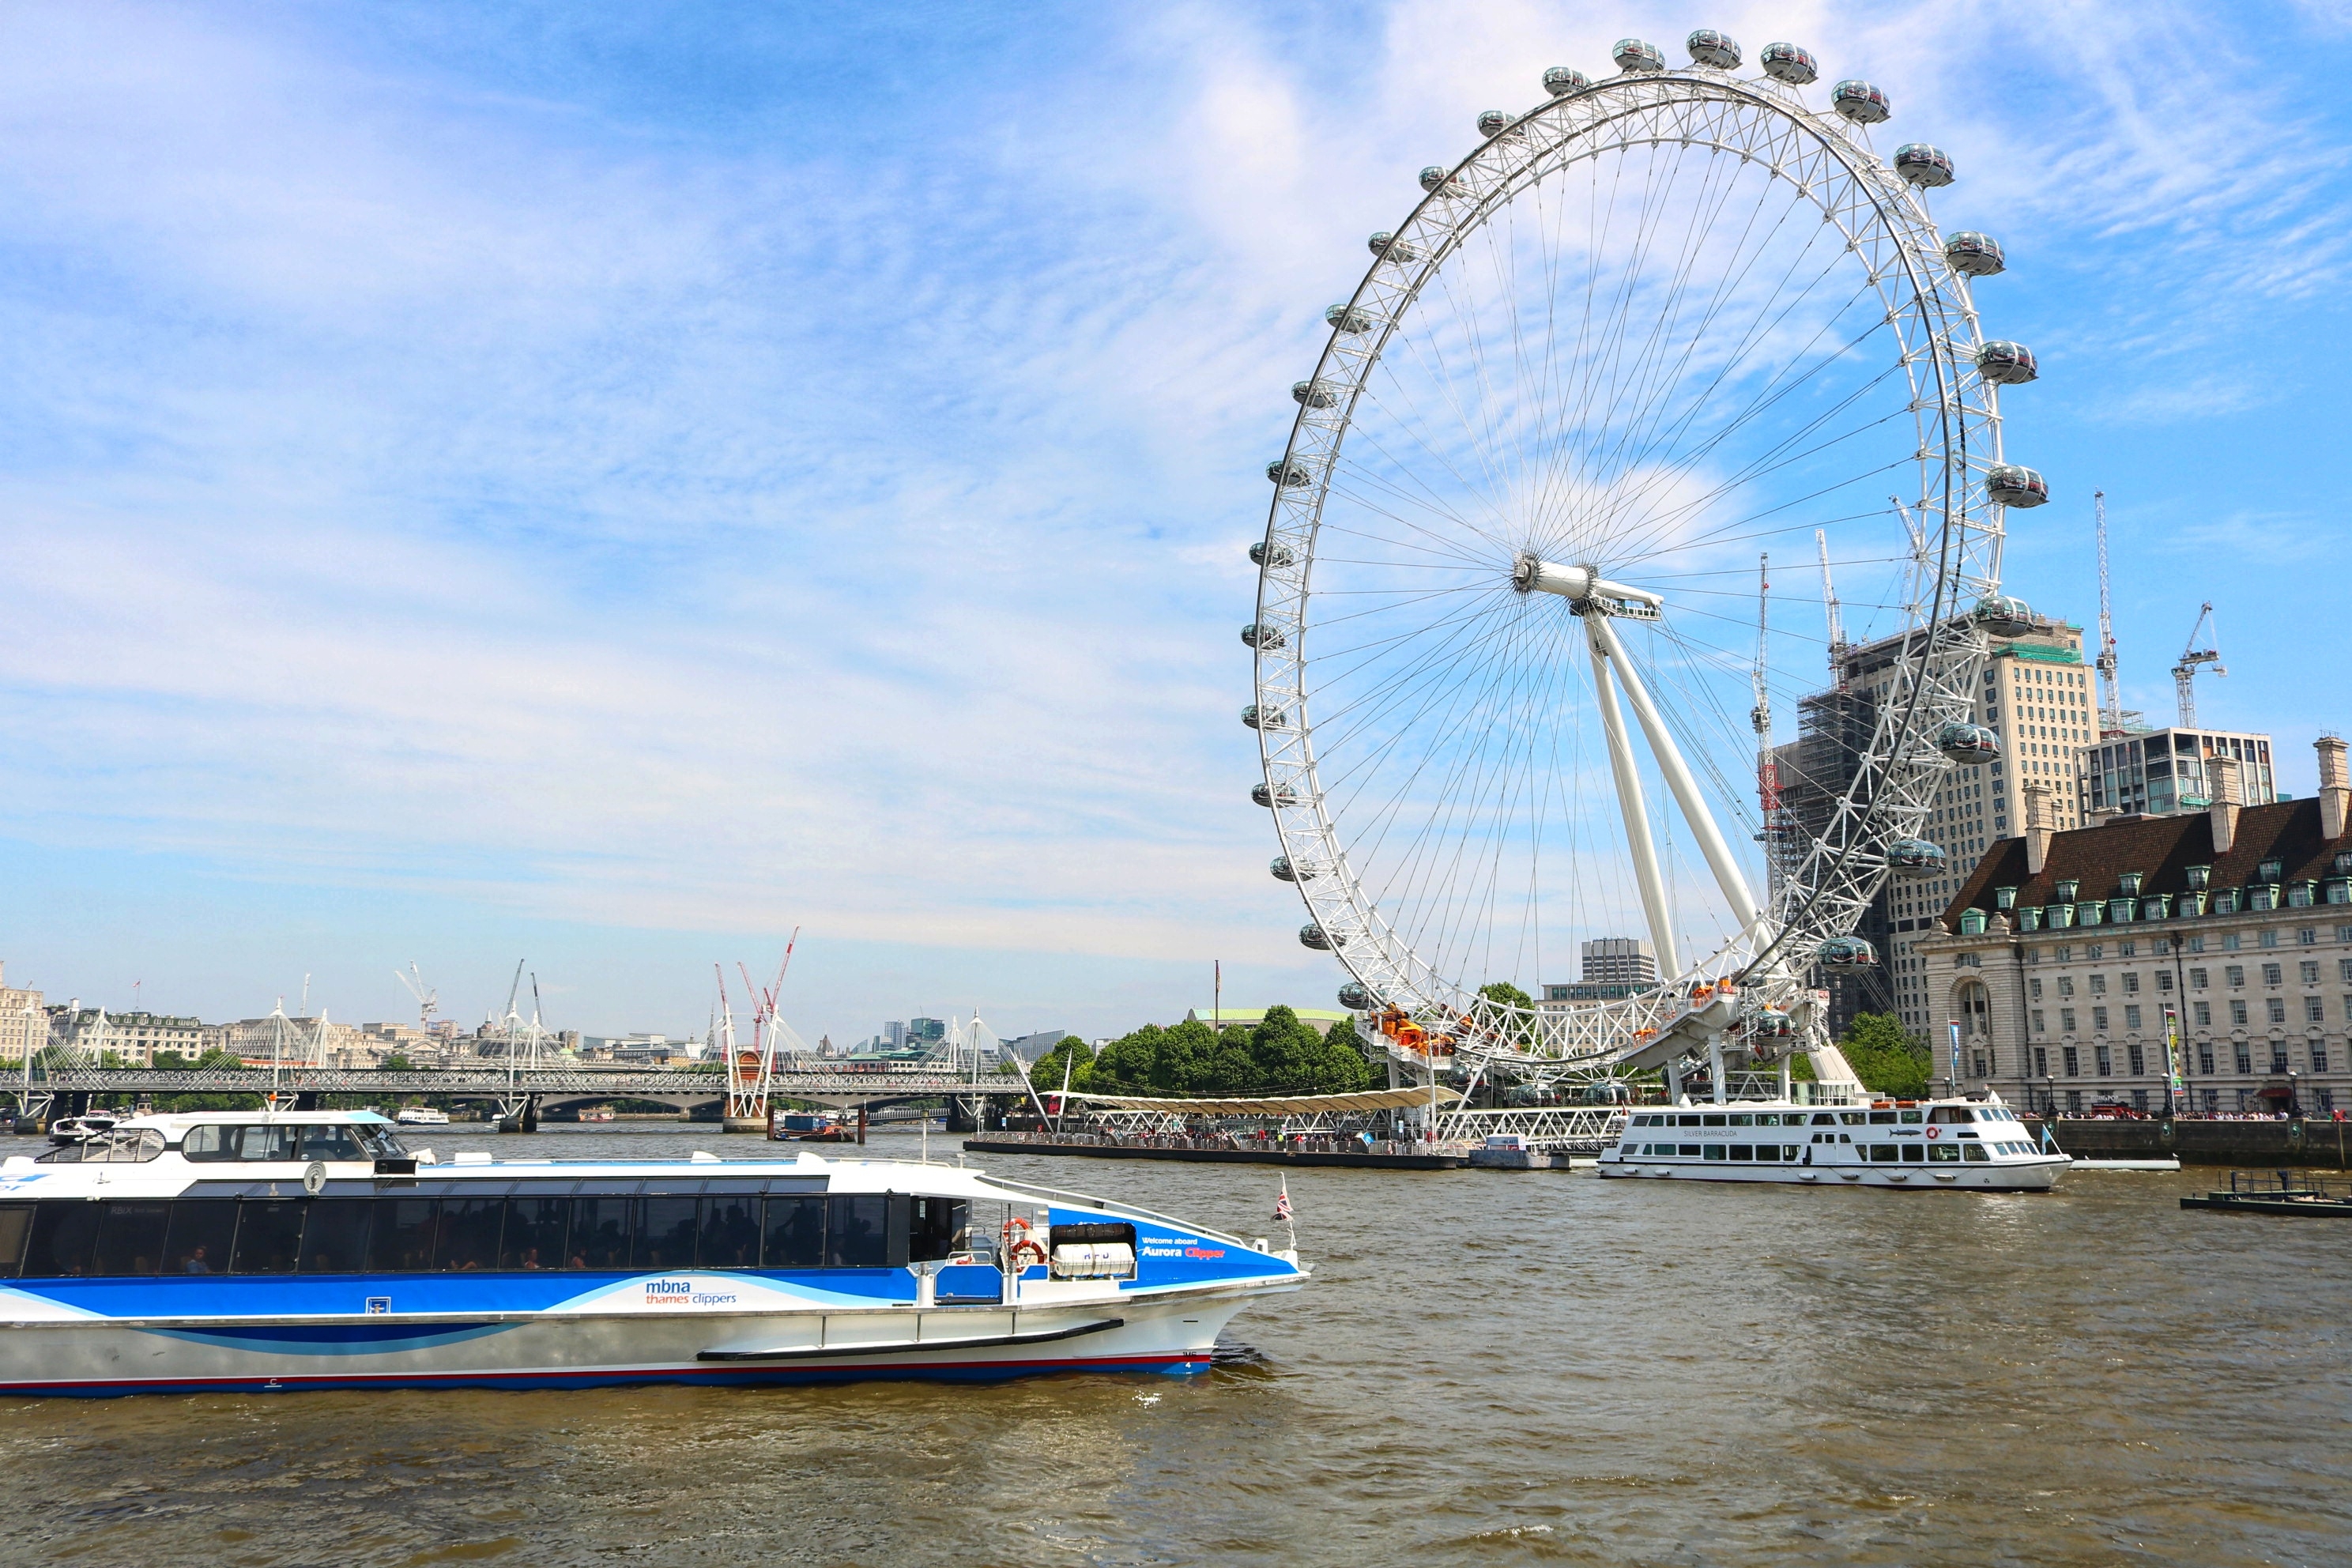 "伦敦眼"坐落在英国伦敦泰晤士河畔,为庆祝新千年而建造